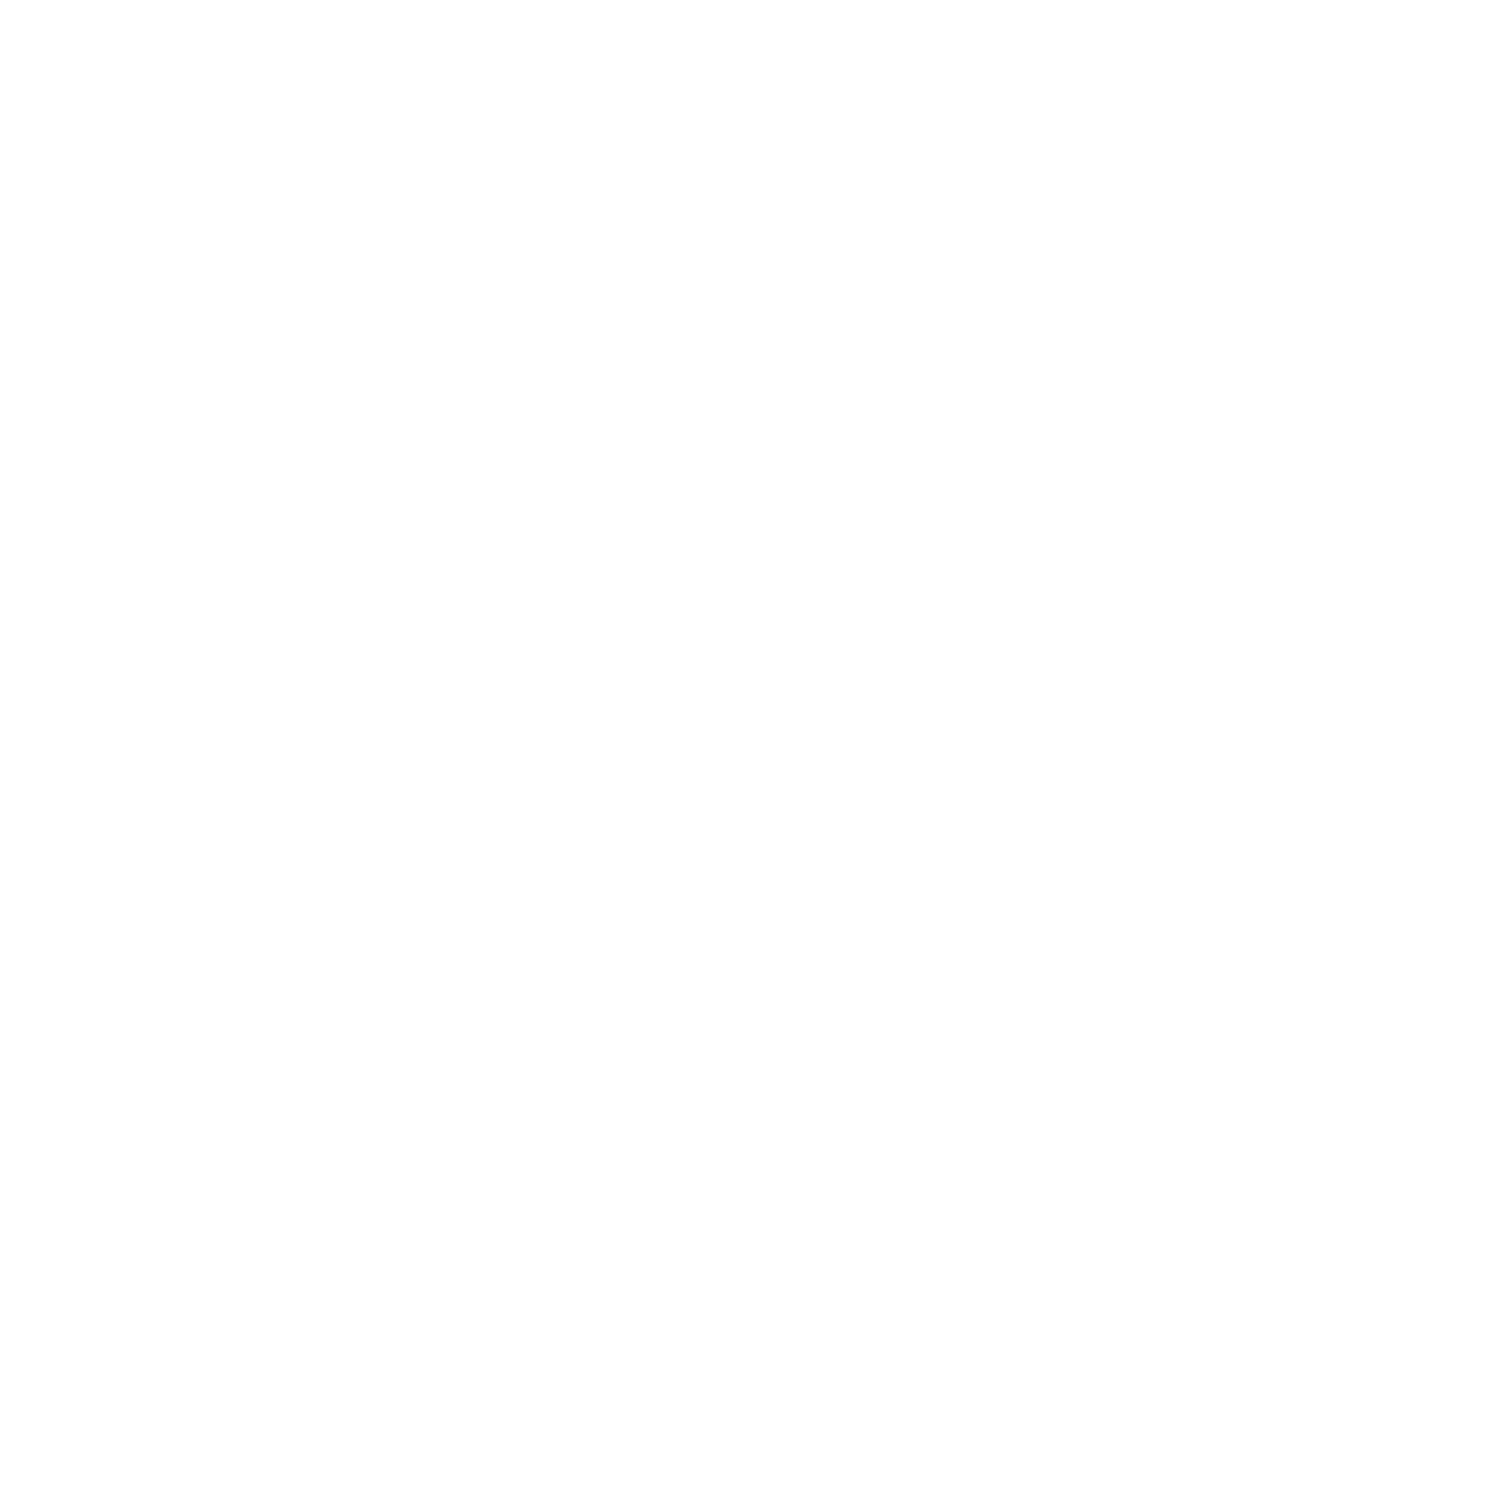 AGOK Foundation